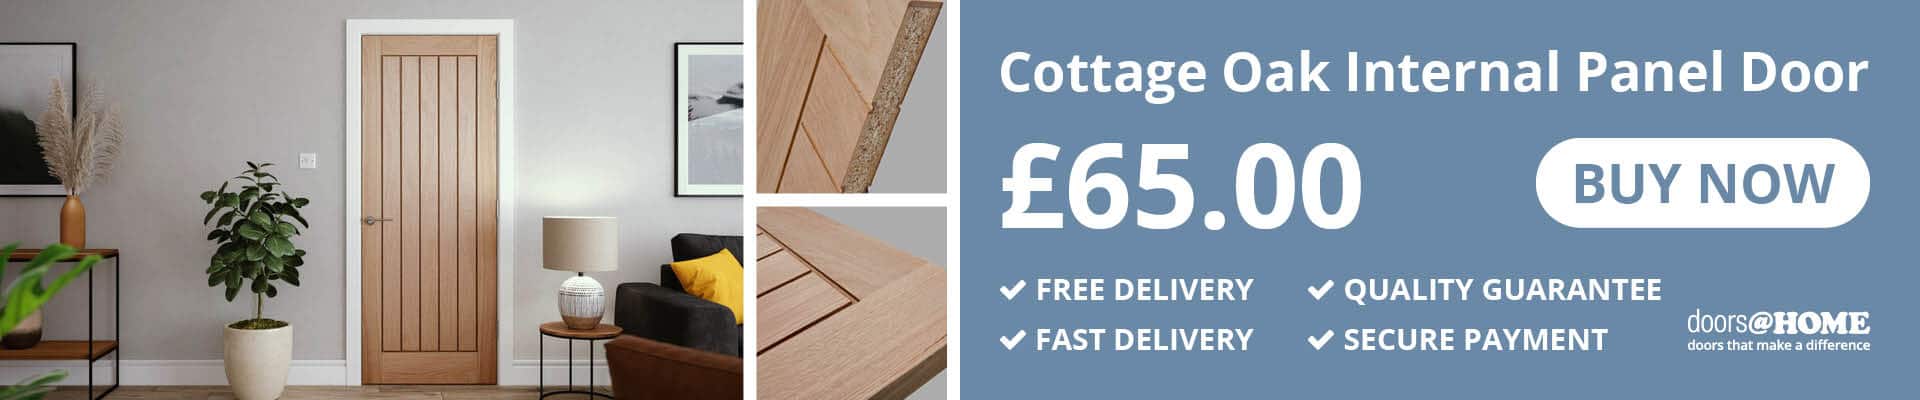 Buy the Cottage Oak Internal Panel Door for just £65